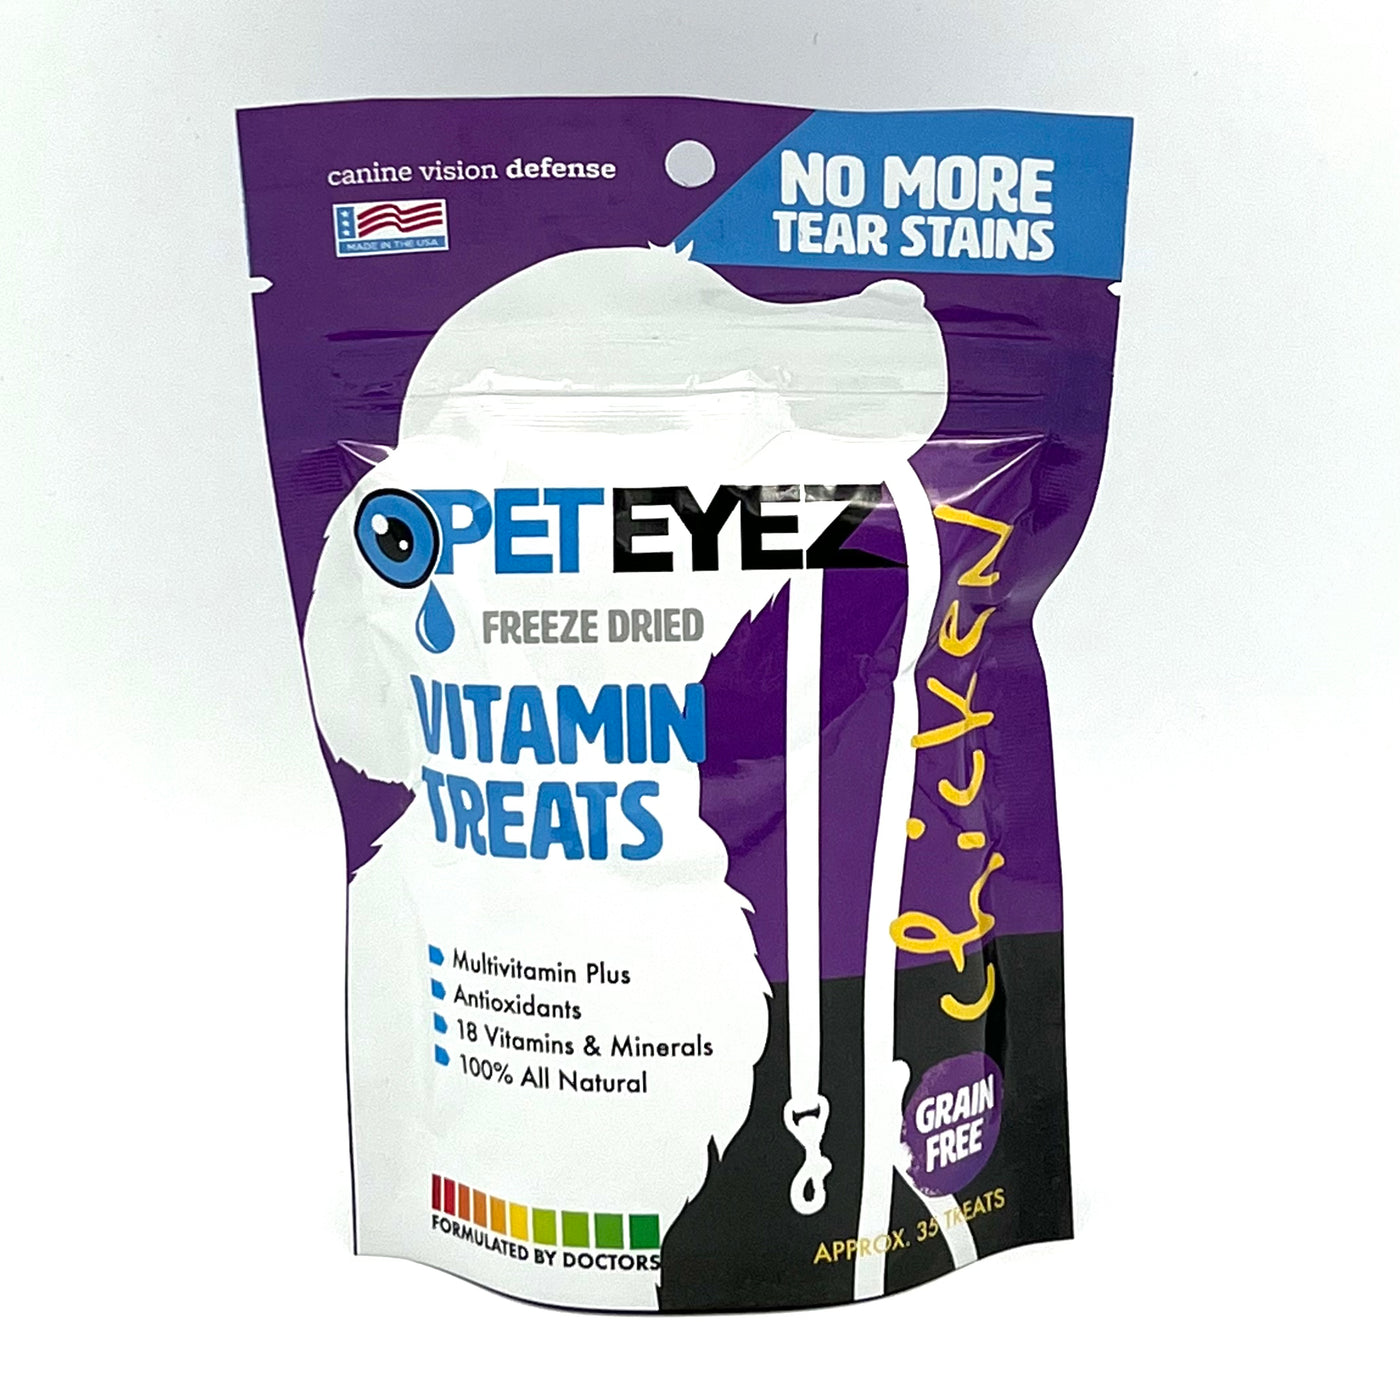 Pet Eyez Chicken Liver Vitamin Treat